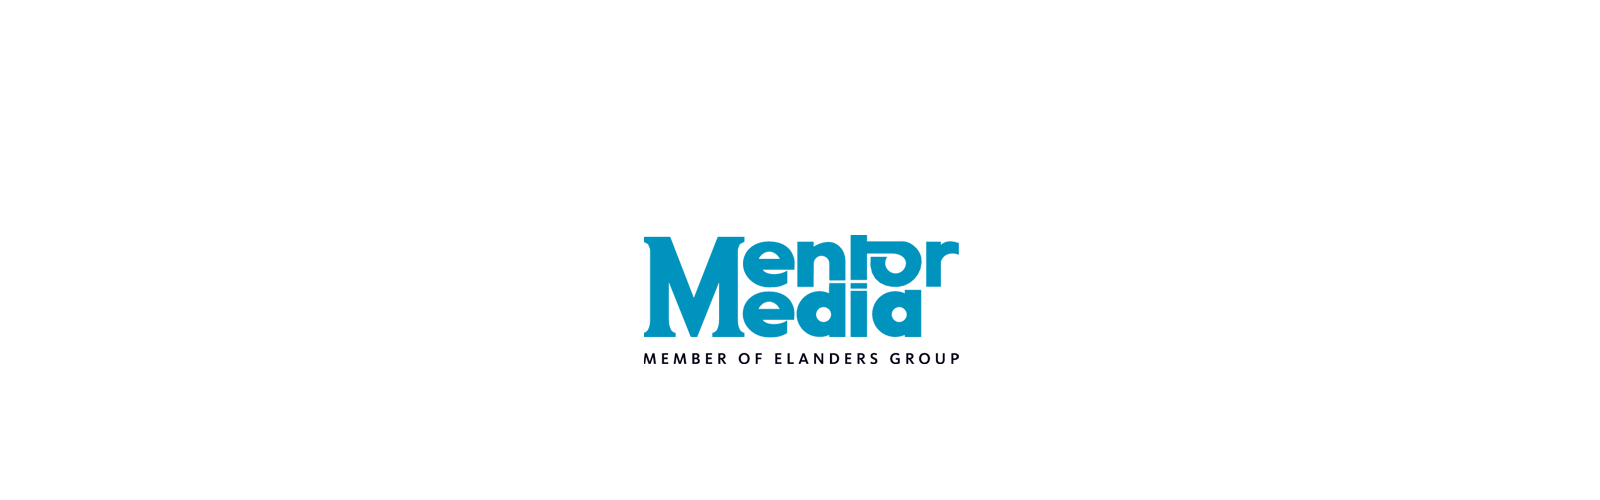 Logo Mentor Media